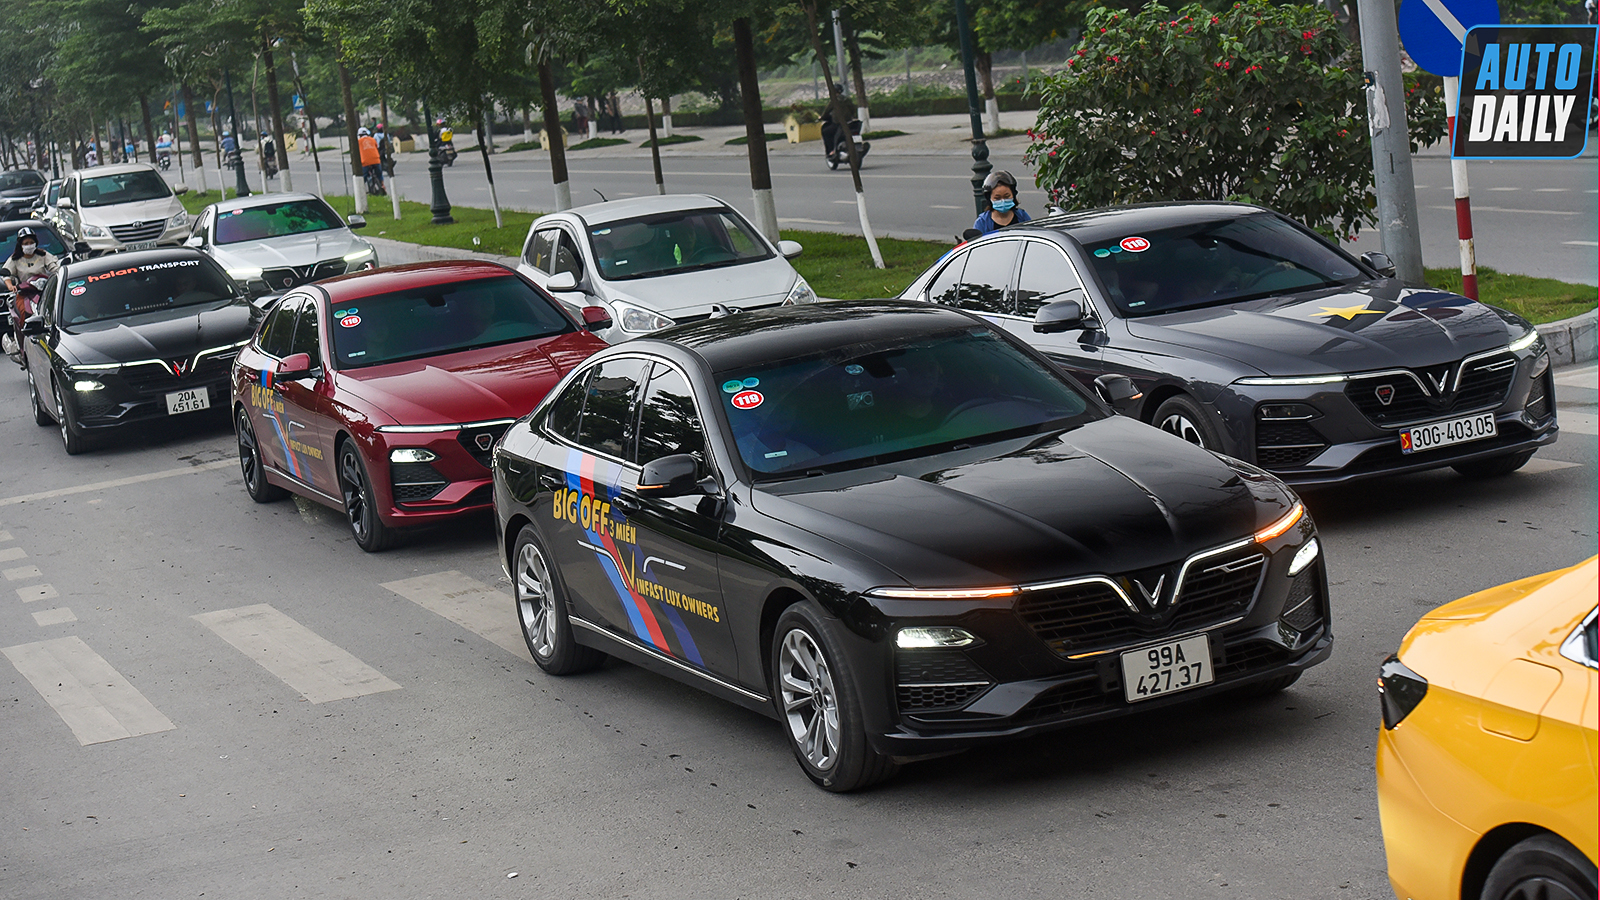 Chùm ảnh gần 60 xe VinFast Lux tại Hà Nội xuất phát Offline 3 miền tại Hội An dsc-6294-copy.jpg